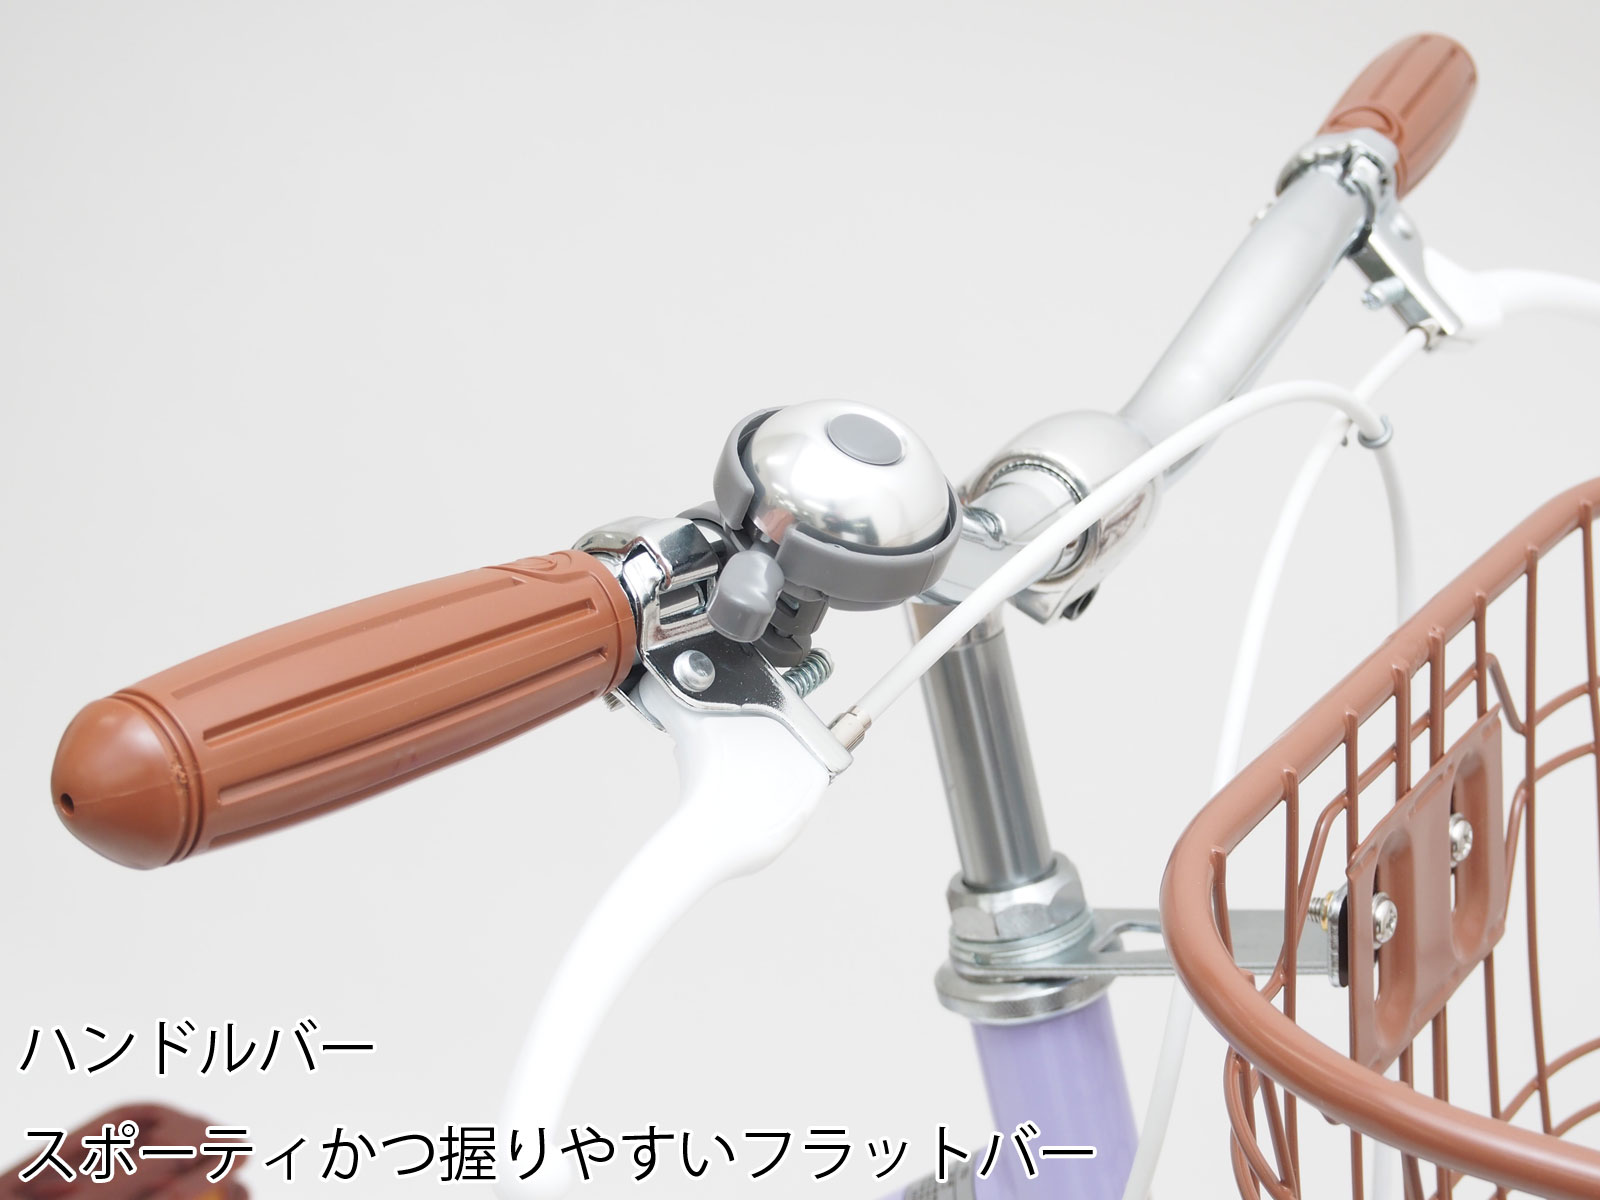  Honshu бесплатная доставка детский велосипед 22 дюймовый 24 дюймовый Monaco одиночный механизм блок свет девочка предназначенный ребенок велосипед клиент сборка 